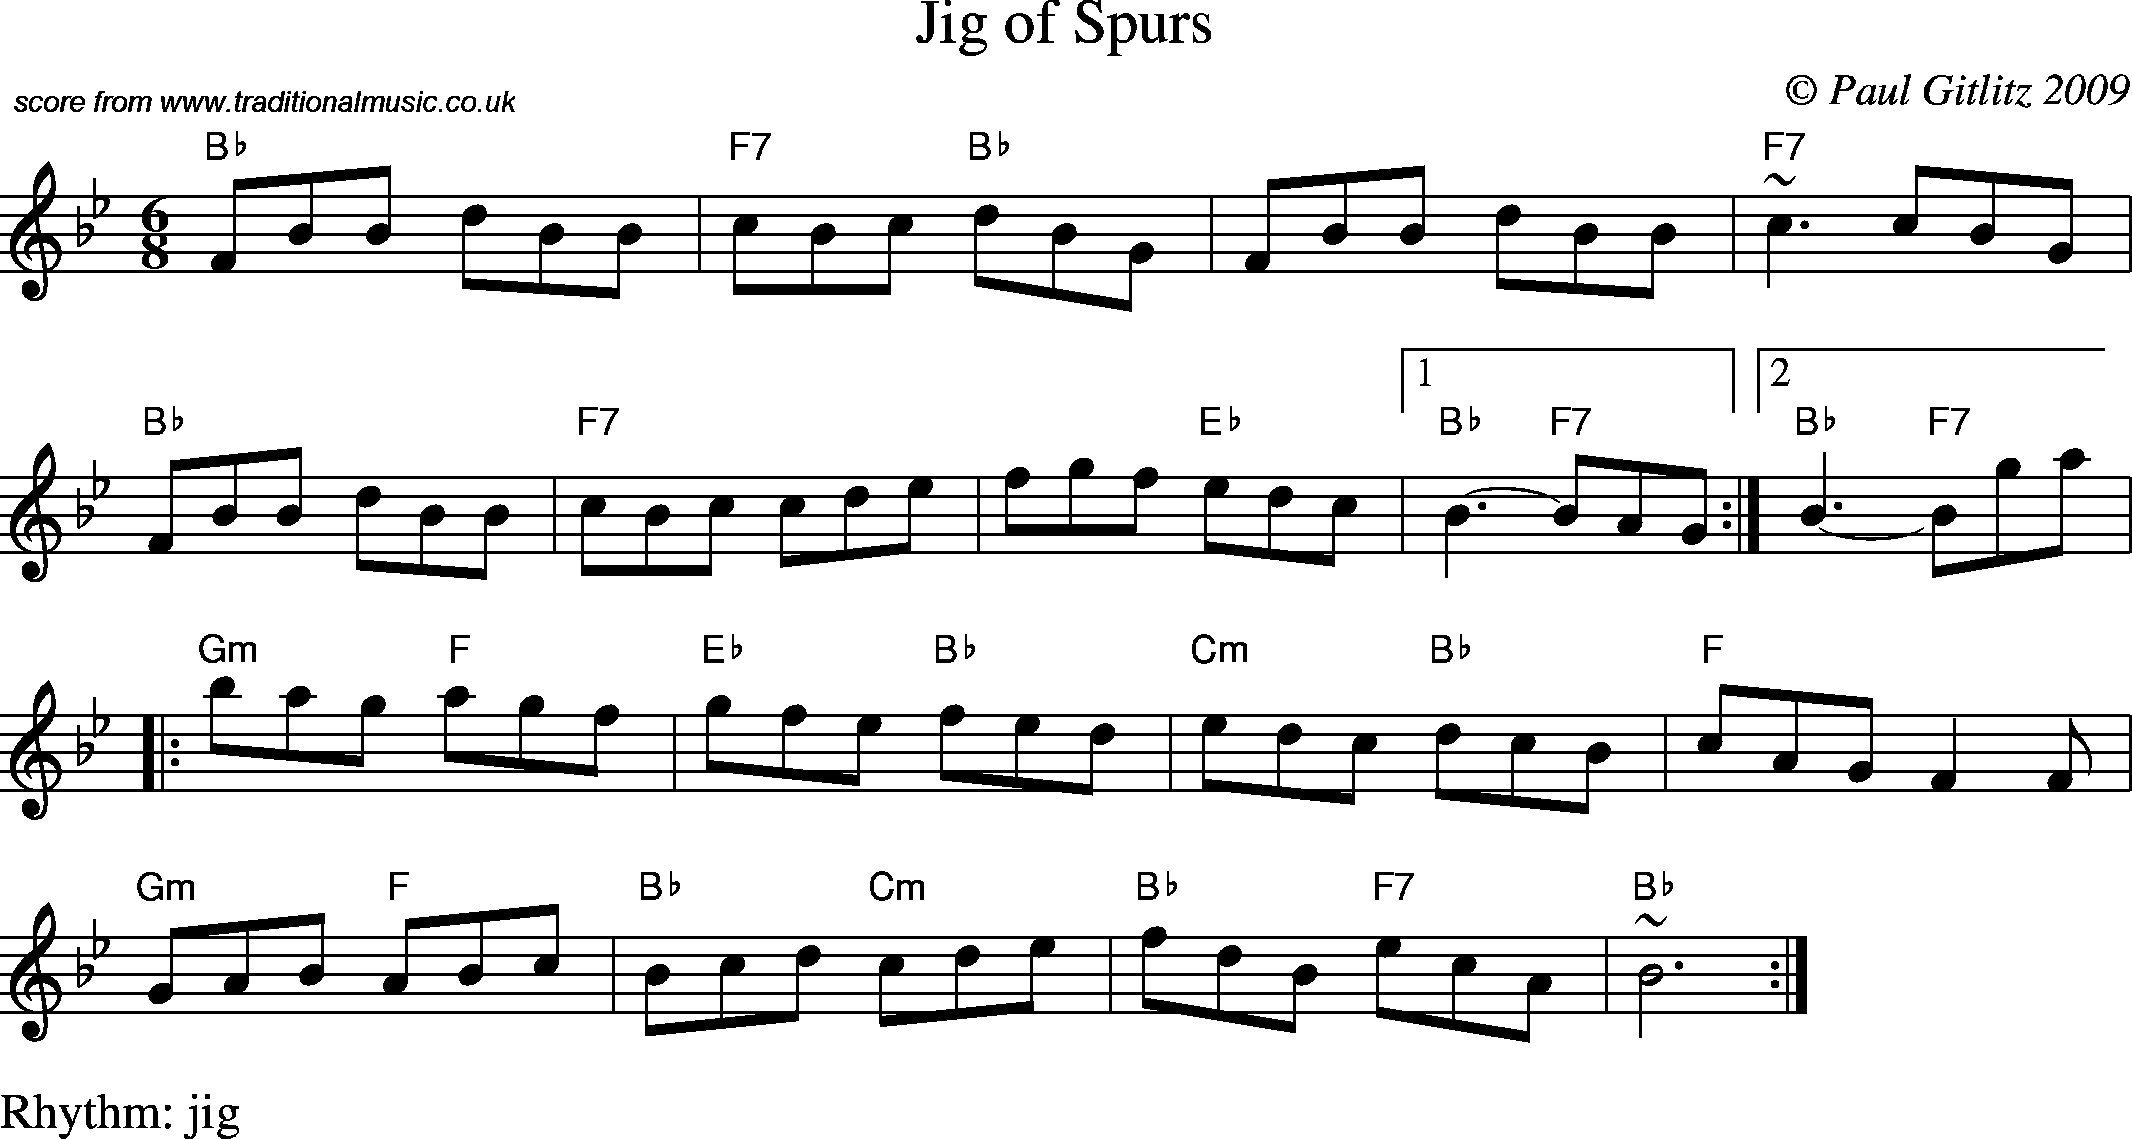 Sheet Music Score for Jig - Jig of Spurs